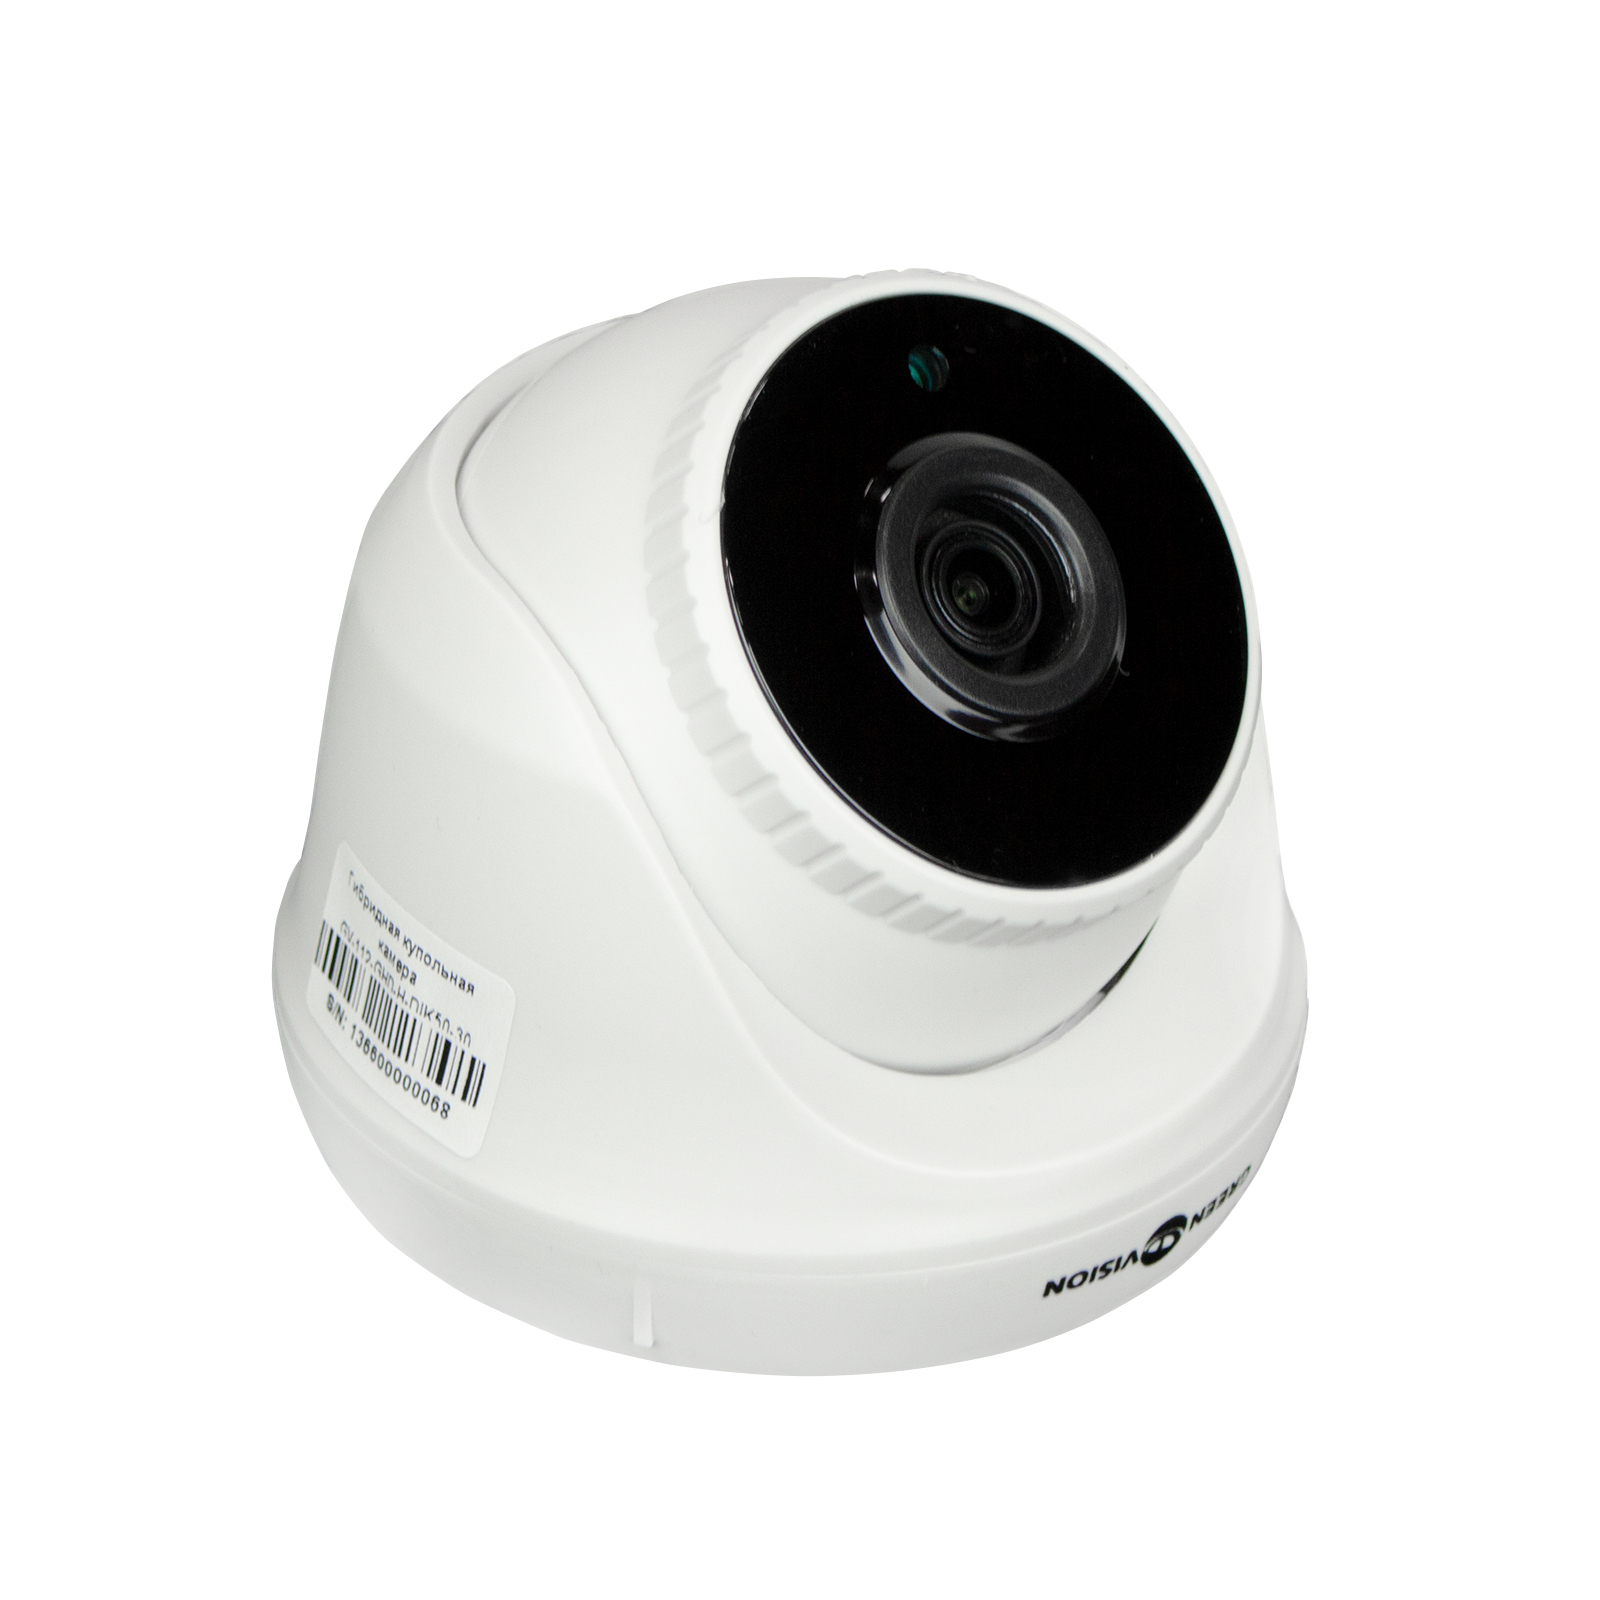 Камера відеоспостереження Greenvision GV-112-GHD-H-DIK50-30 (13660) зображення 3